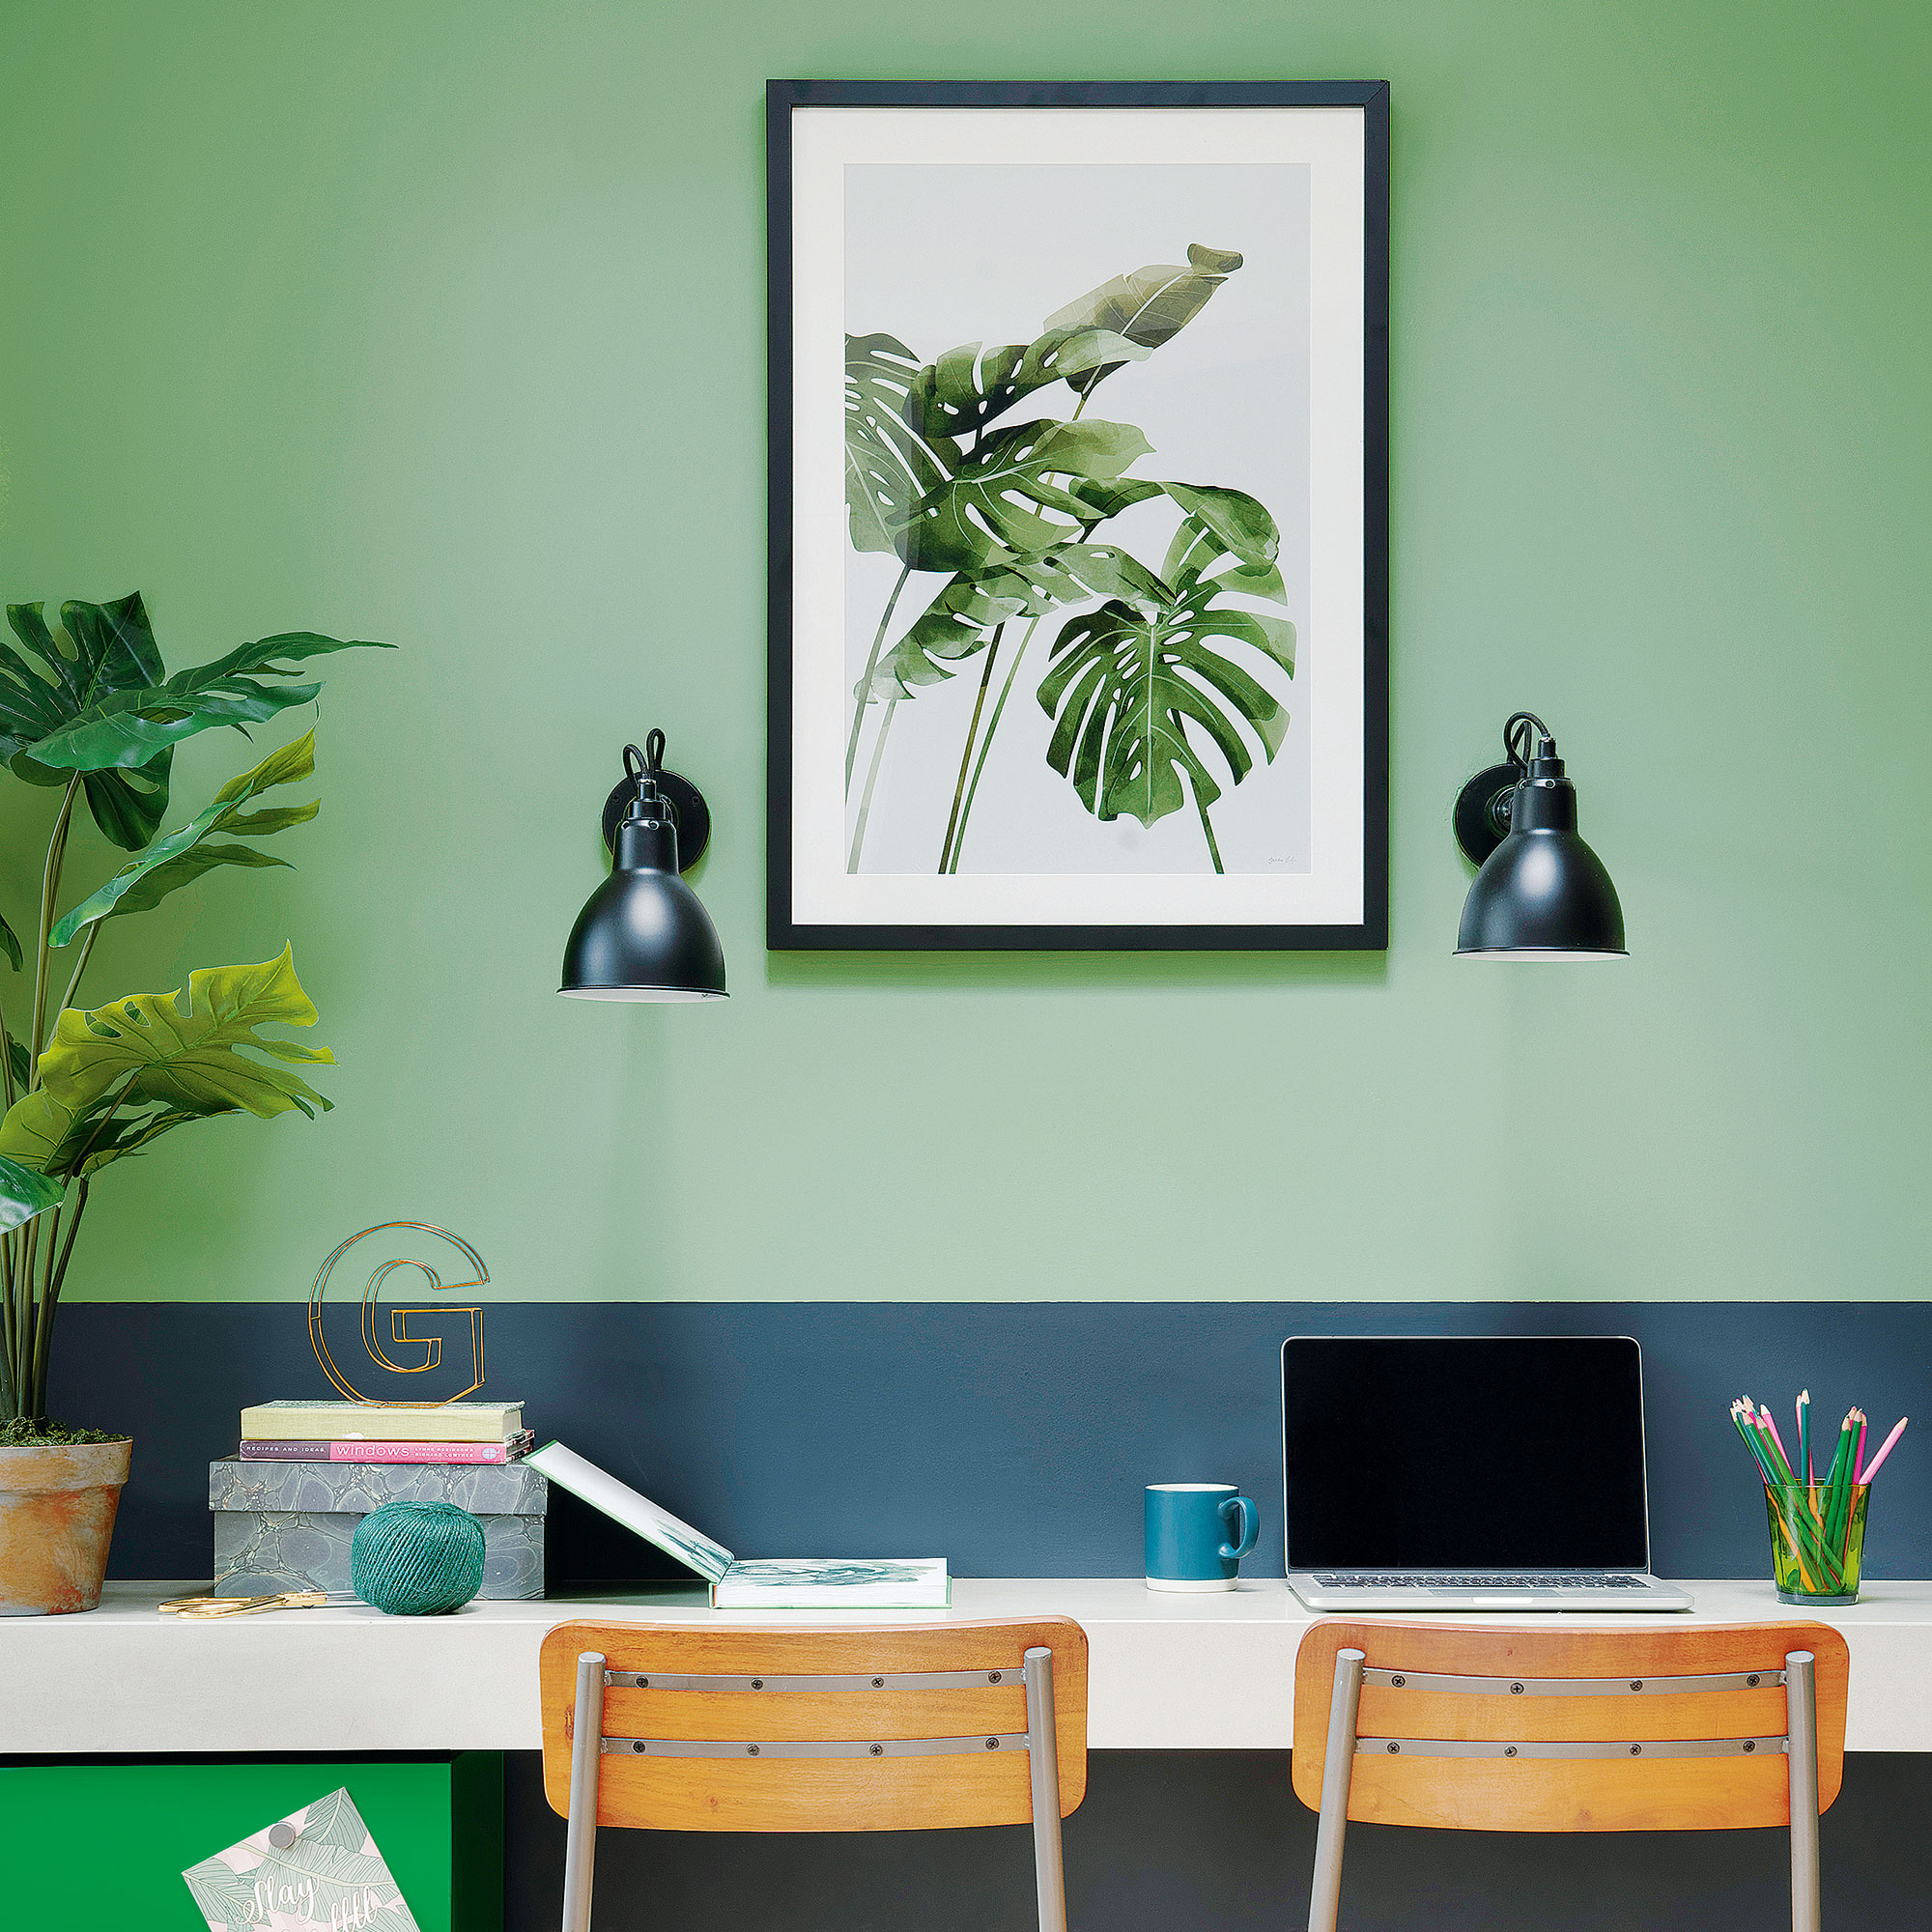 Kantor rumah dengan dua dinding berwarna hijau, dua lampu dinding, dan cetakan botani